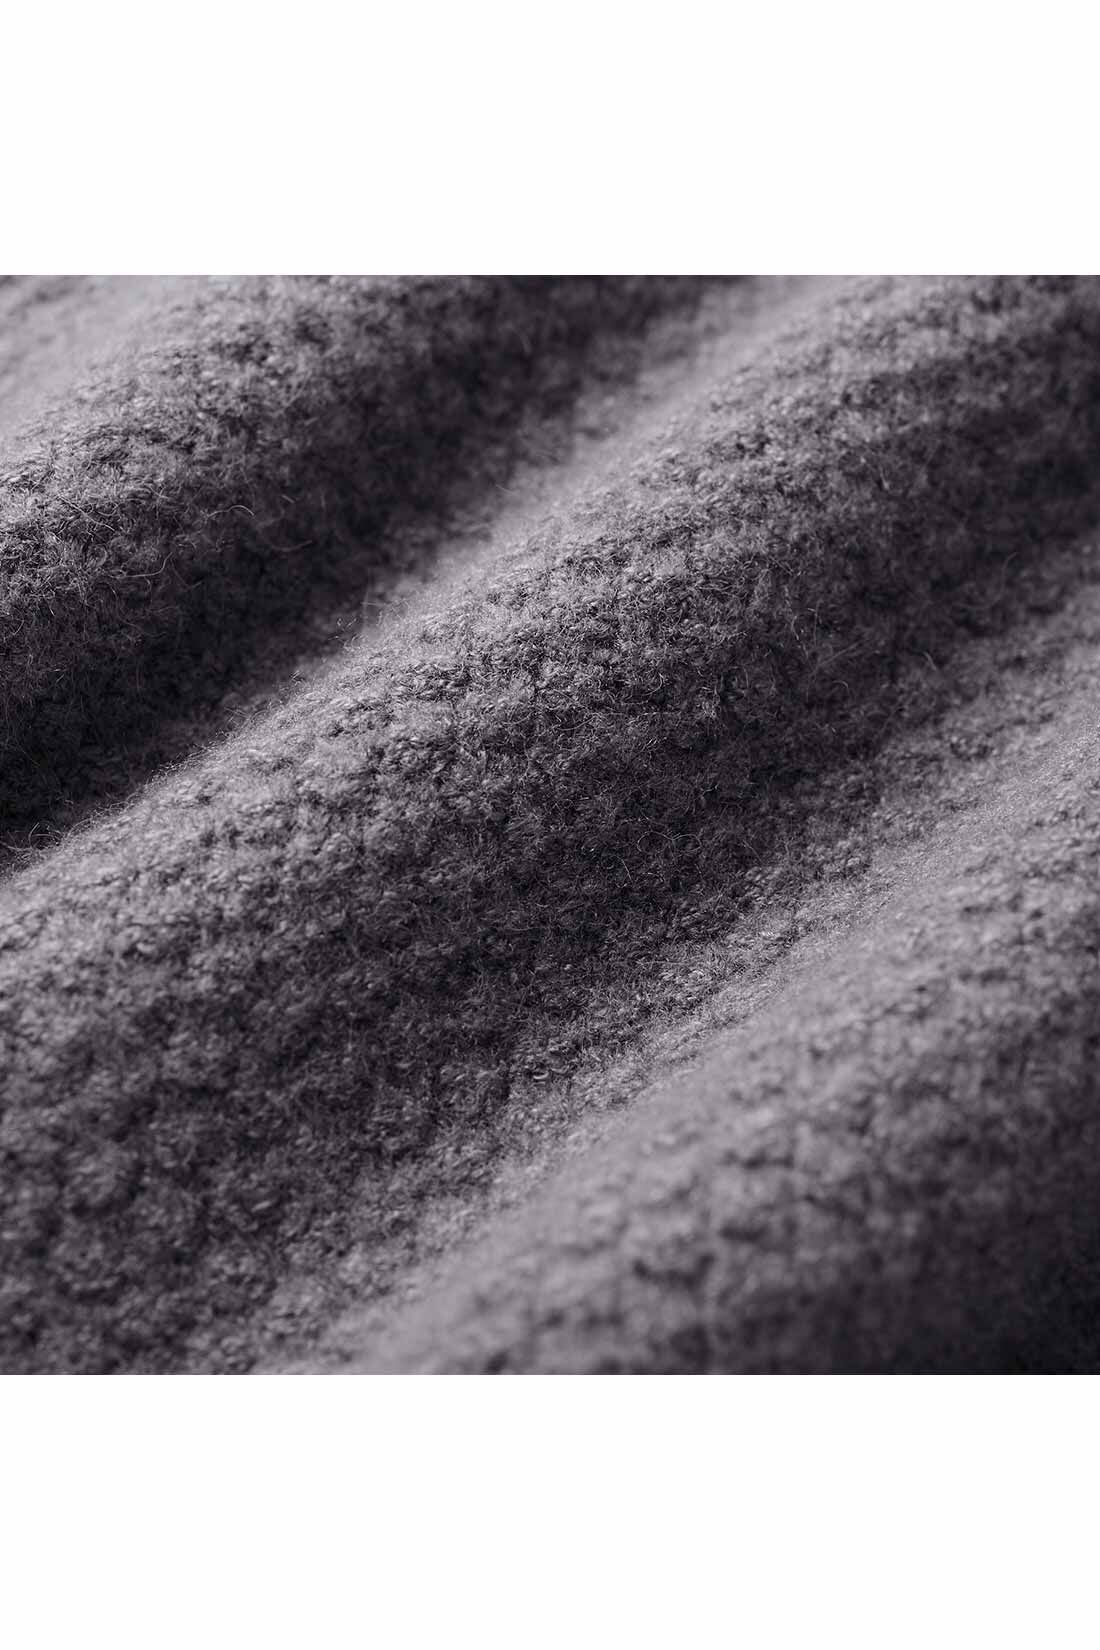 THREE FIFTY STANDARD|THREE FIFTY STANDARD かのこ編みセーター〈ブラウン〉|撚糸（ねんし）を起毛させ膨らみを出した糸で、かのこ編みに仕上げました。　※お届けするカラーとは異なります。